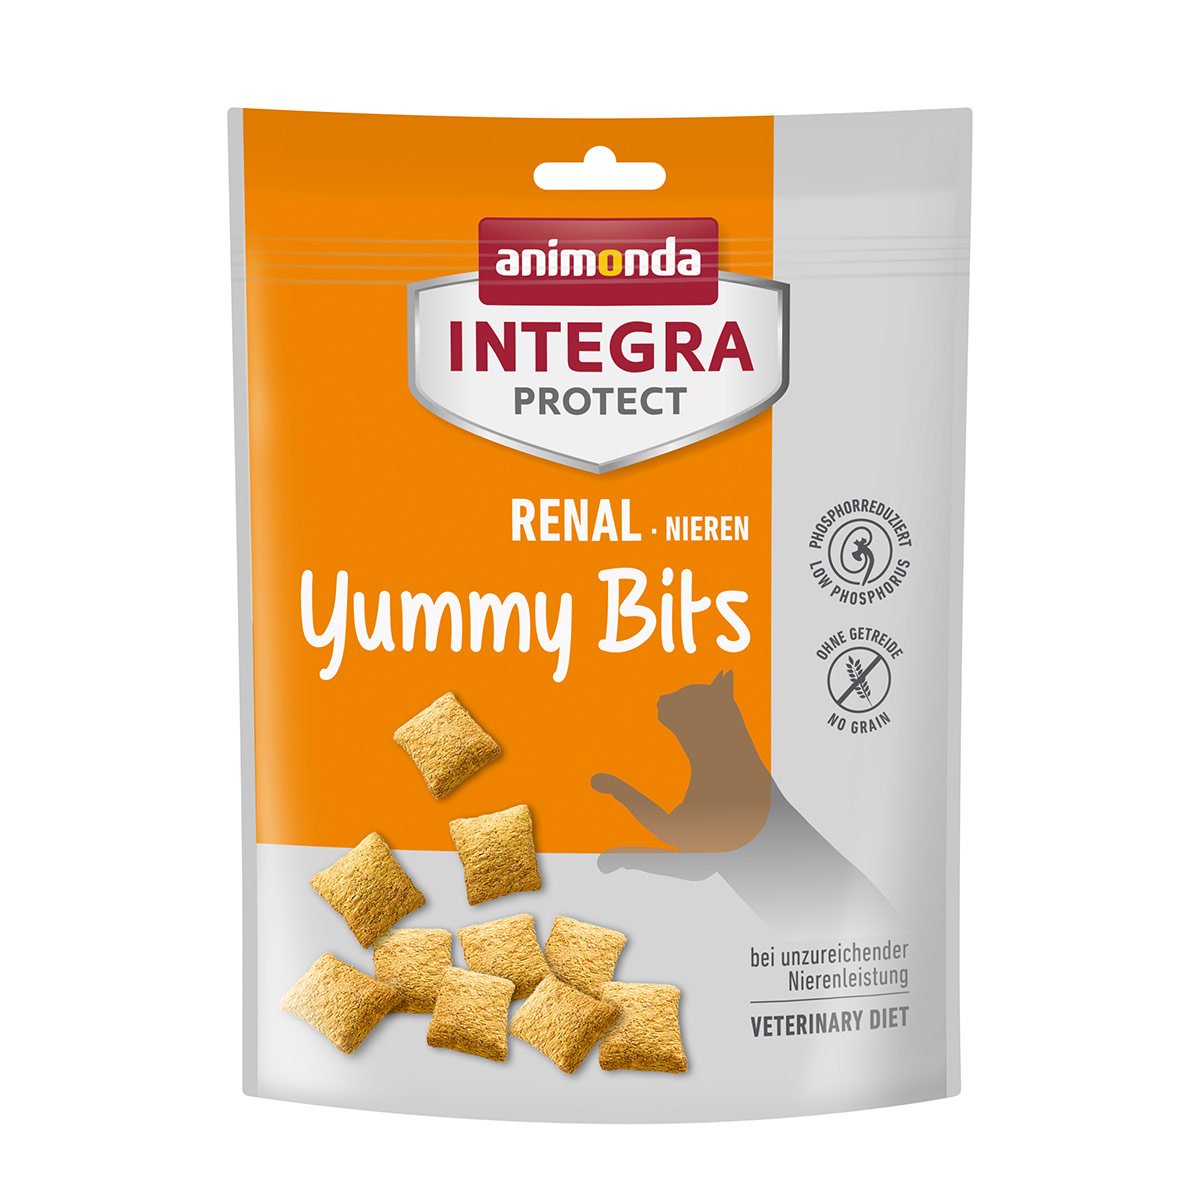 animonda INTEGRA PROTECT Adult Renal Yummy Bits 120g von animonda Integra Protect